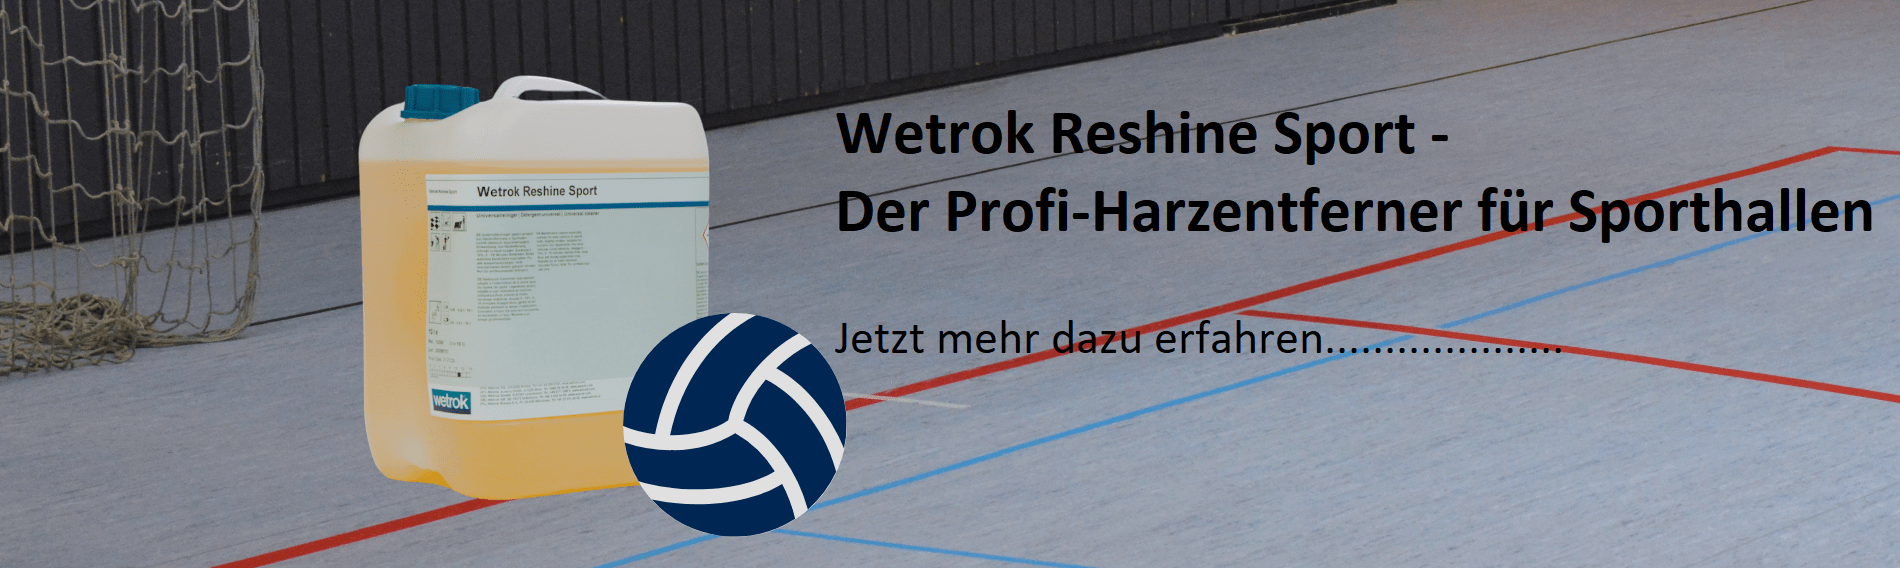 Wetrok Reshine Sport